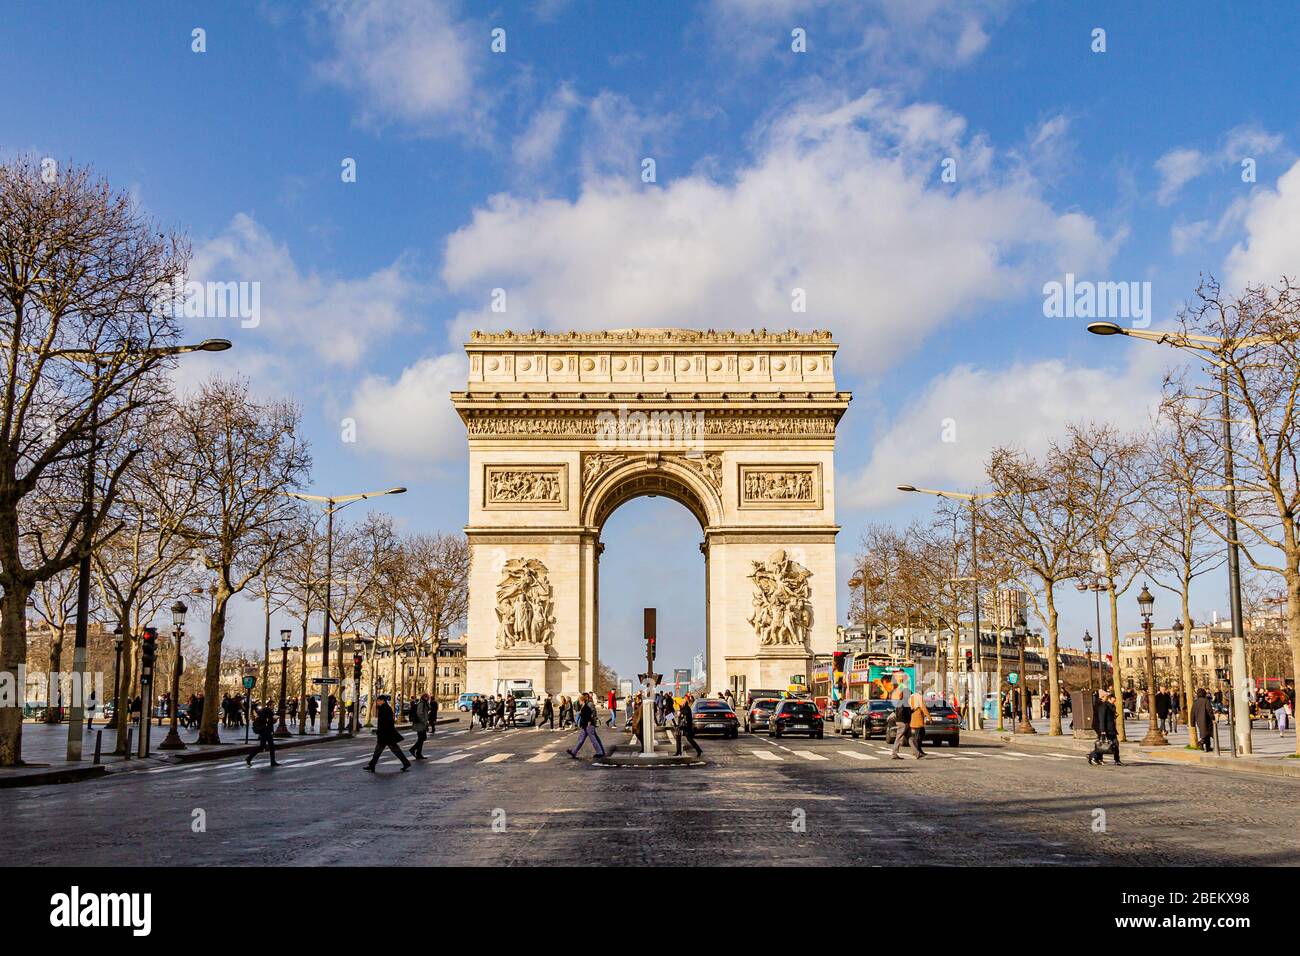 The Arc de Triomphe on the Champs-Élysées, Paris, France. February 2020. Stock Photo